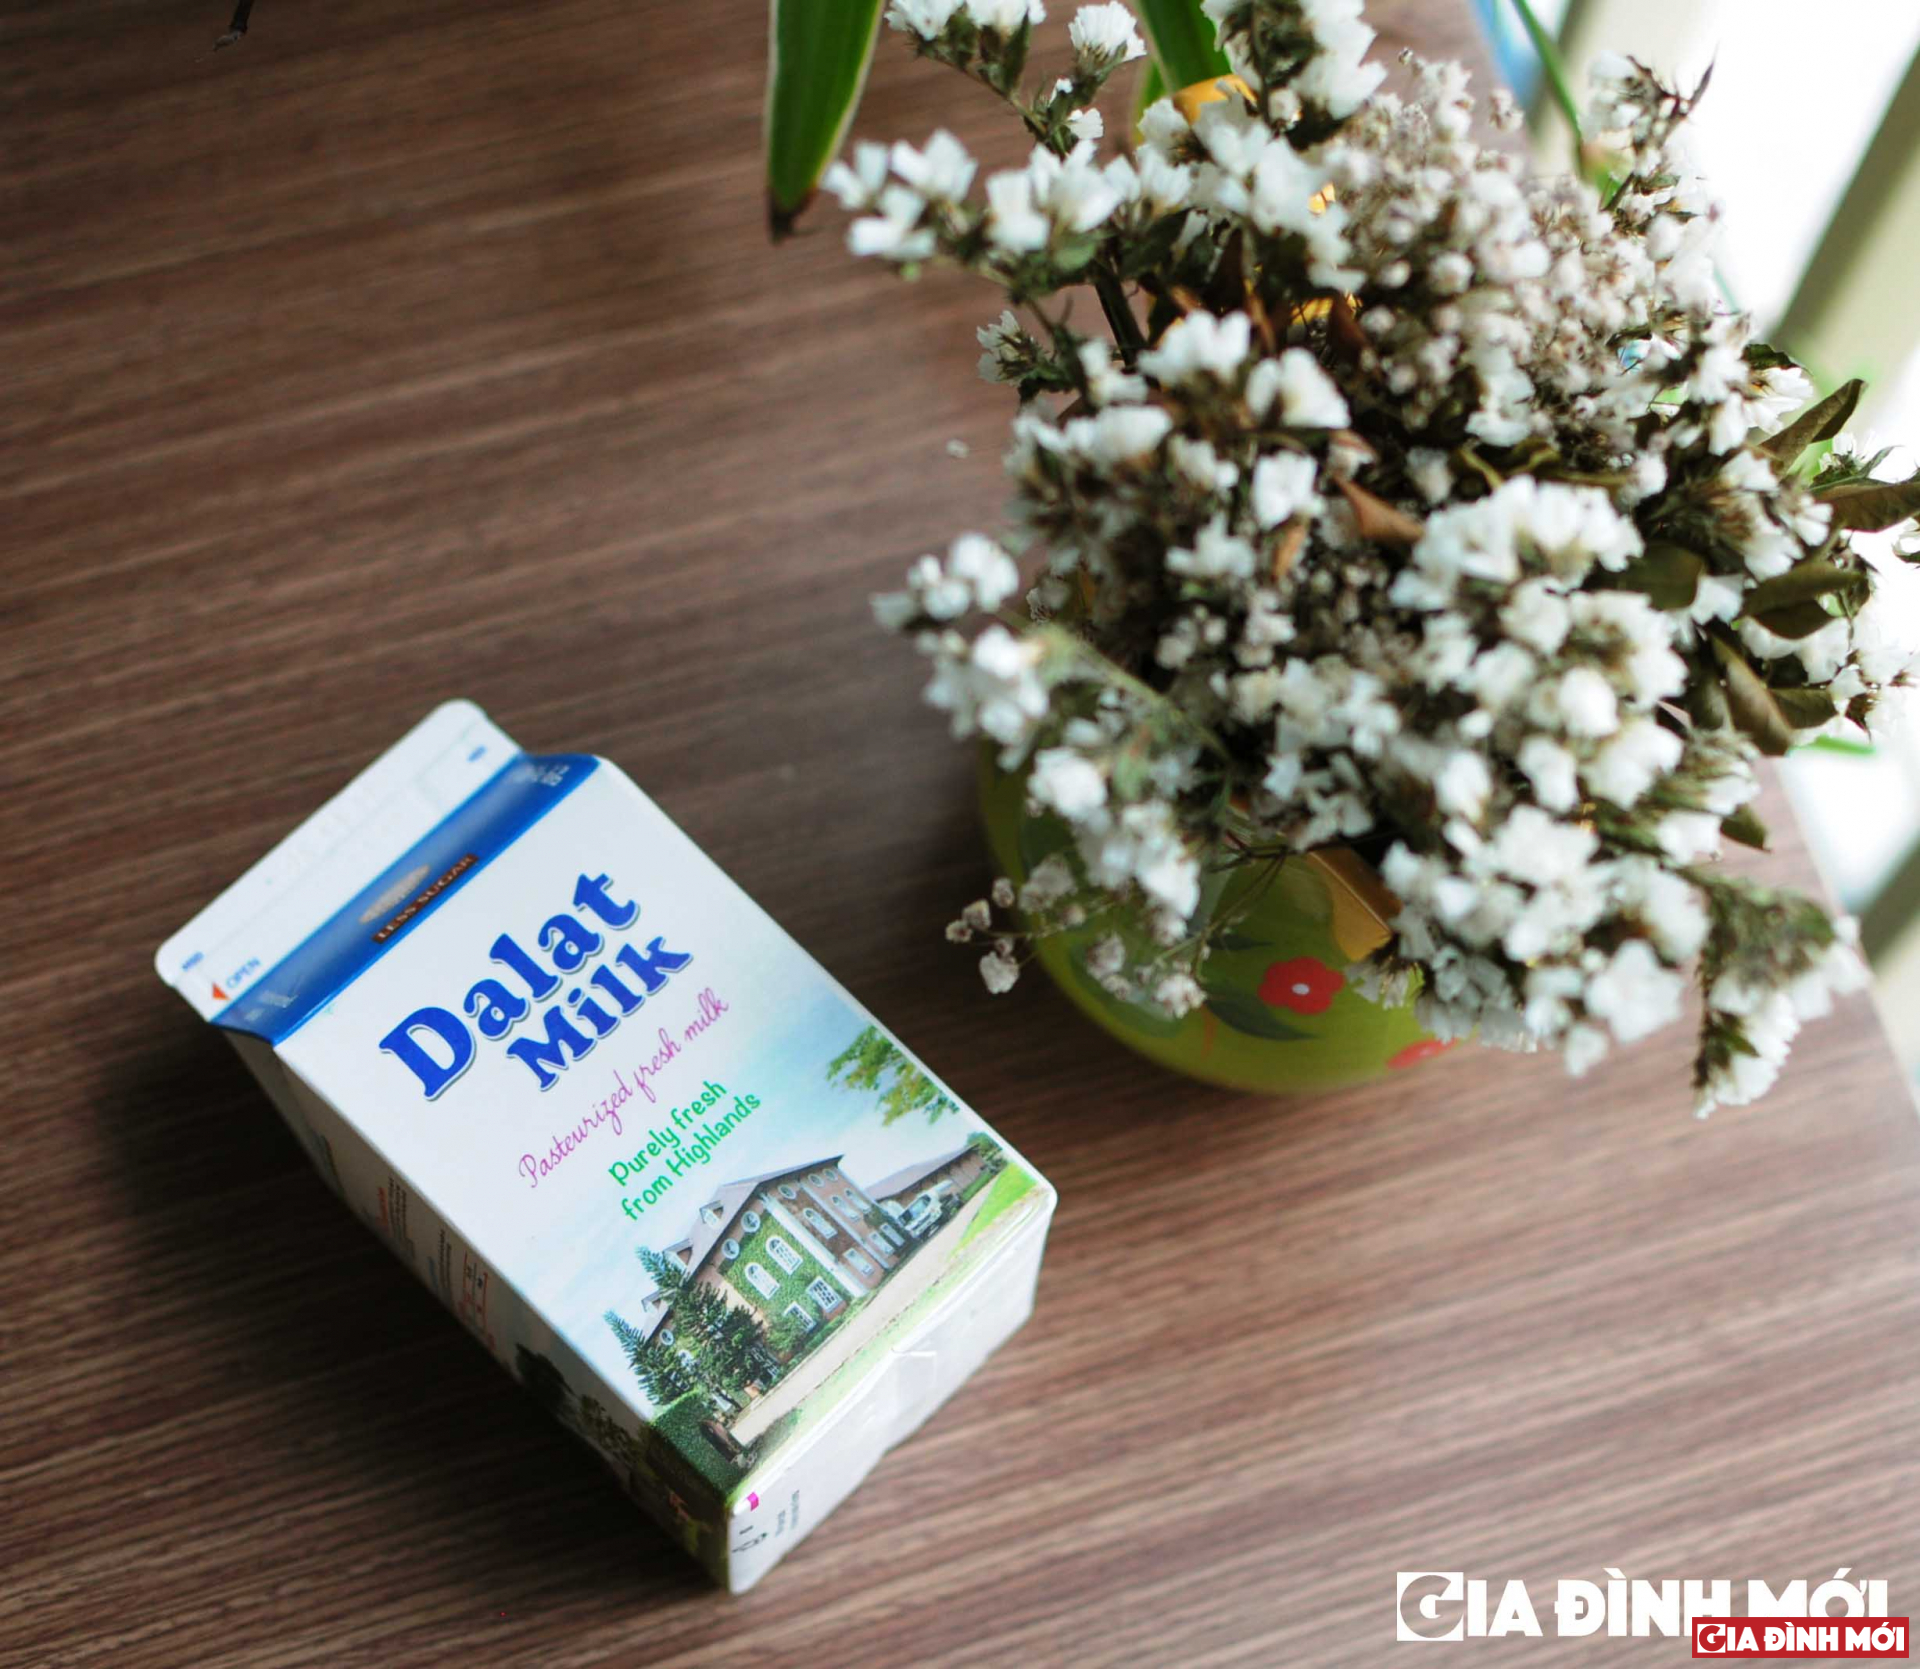 Sữa Dalat milk 450ml phù hợp để sử dụng hết trong ngày